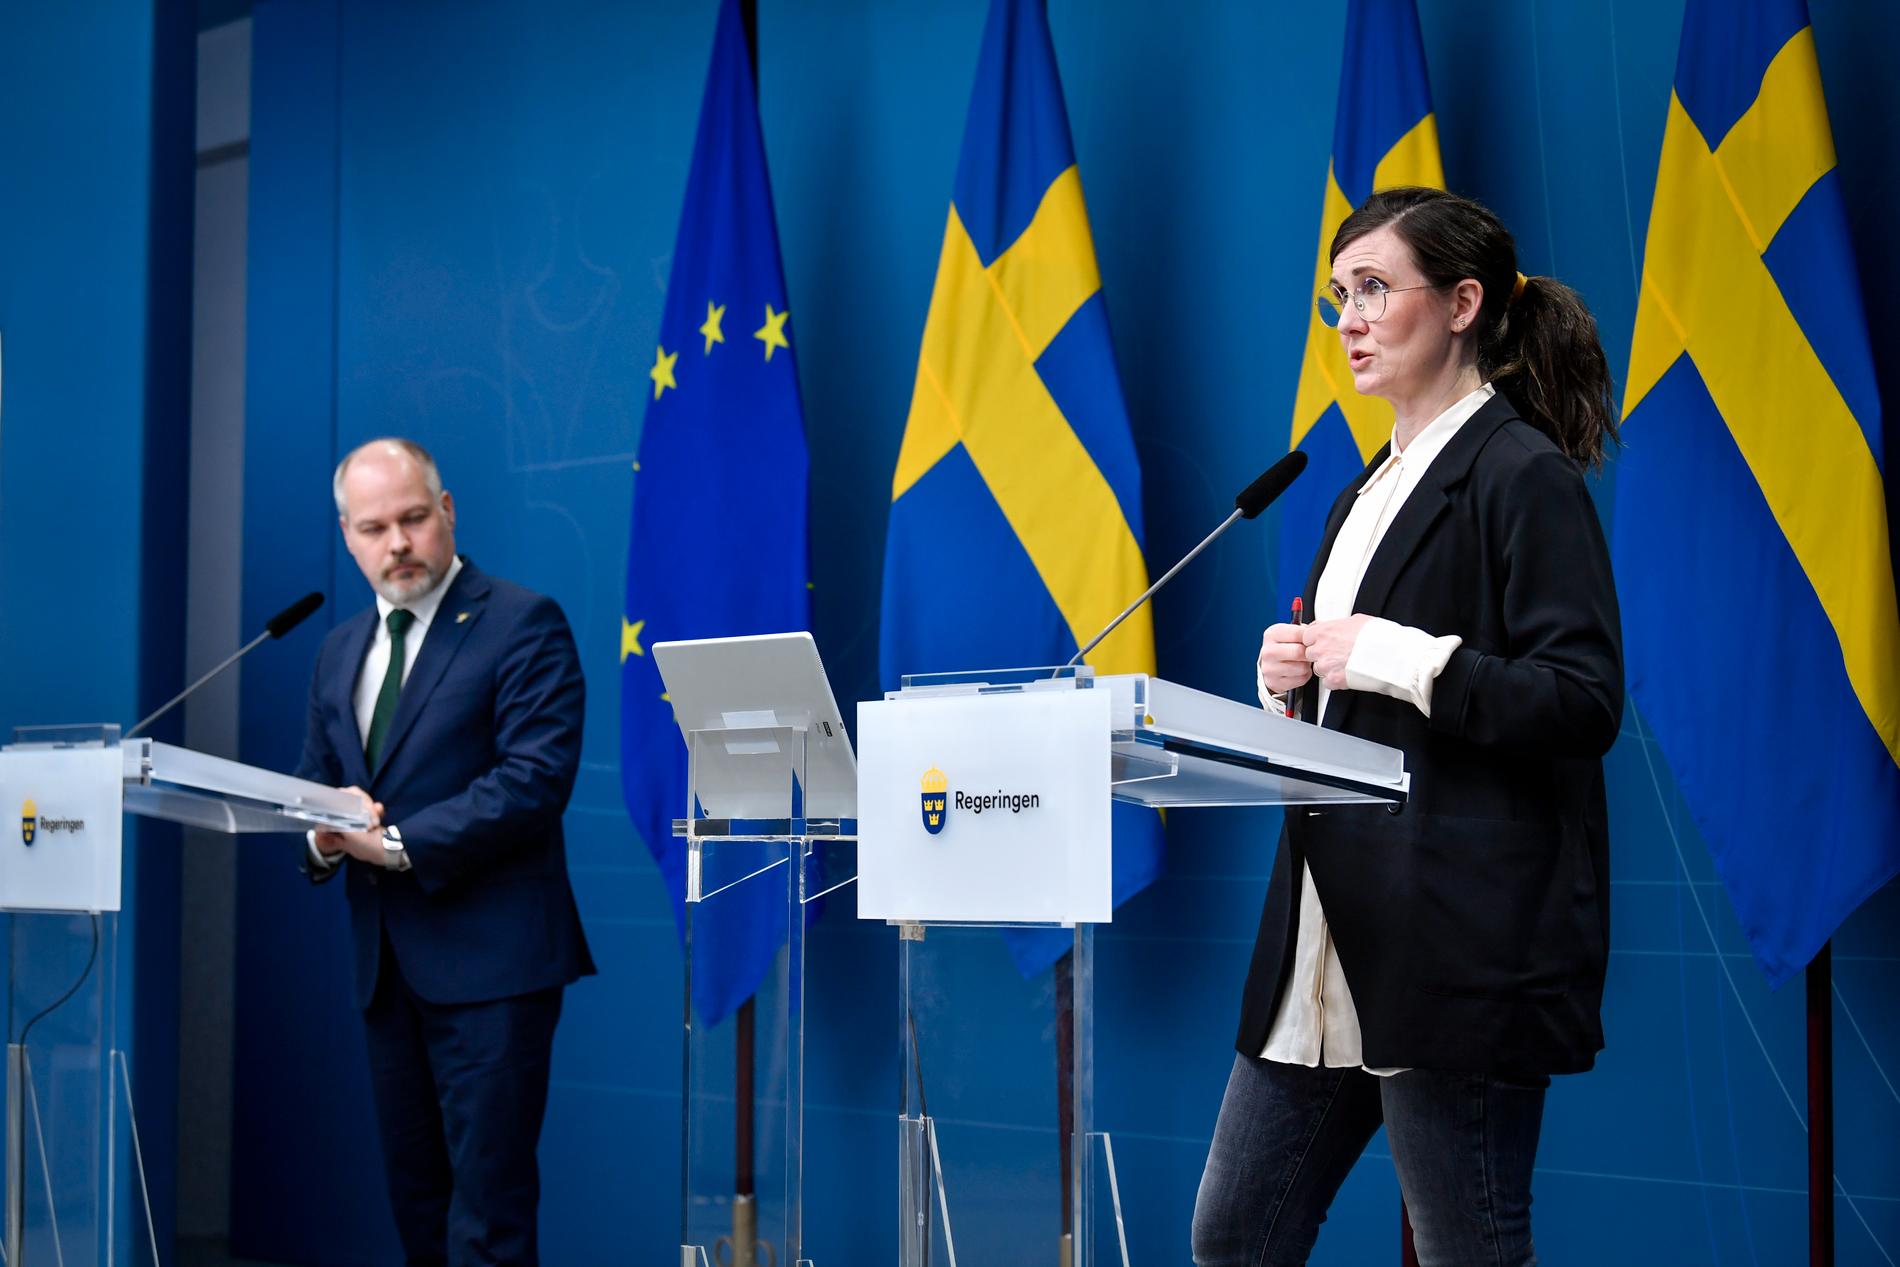 Justitie- och migrationsminister Morgan Johansson och Märta Stenevi, jämställdhets- och bostadsminister med ansvar för arbetet mot segregation och diskriminering, håller en digital pressträff om den framtida migrationspolitiken.